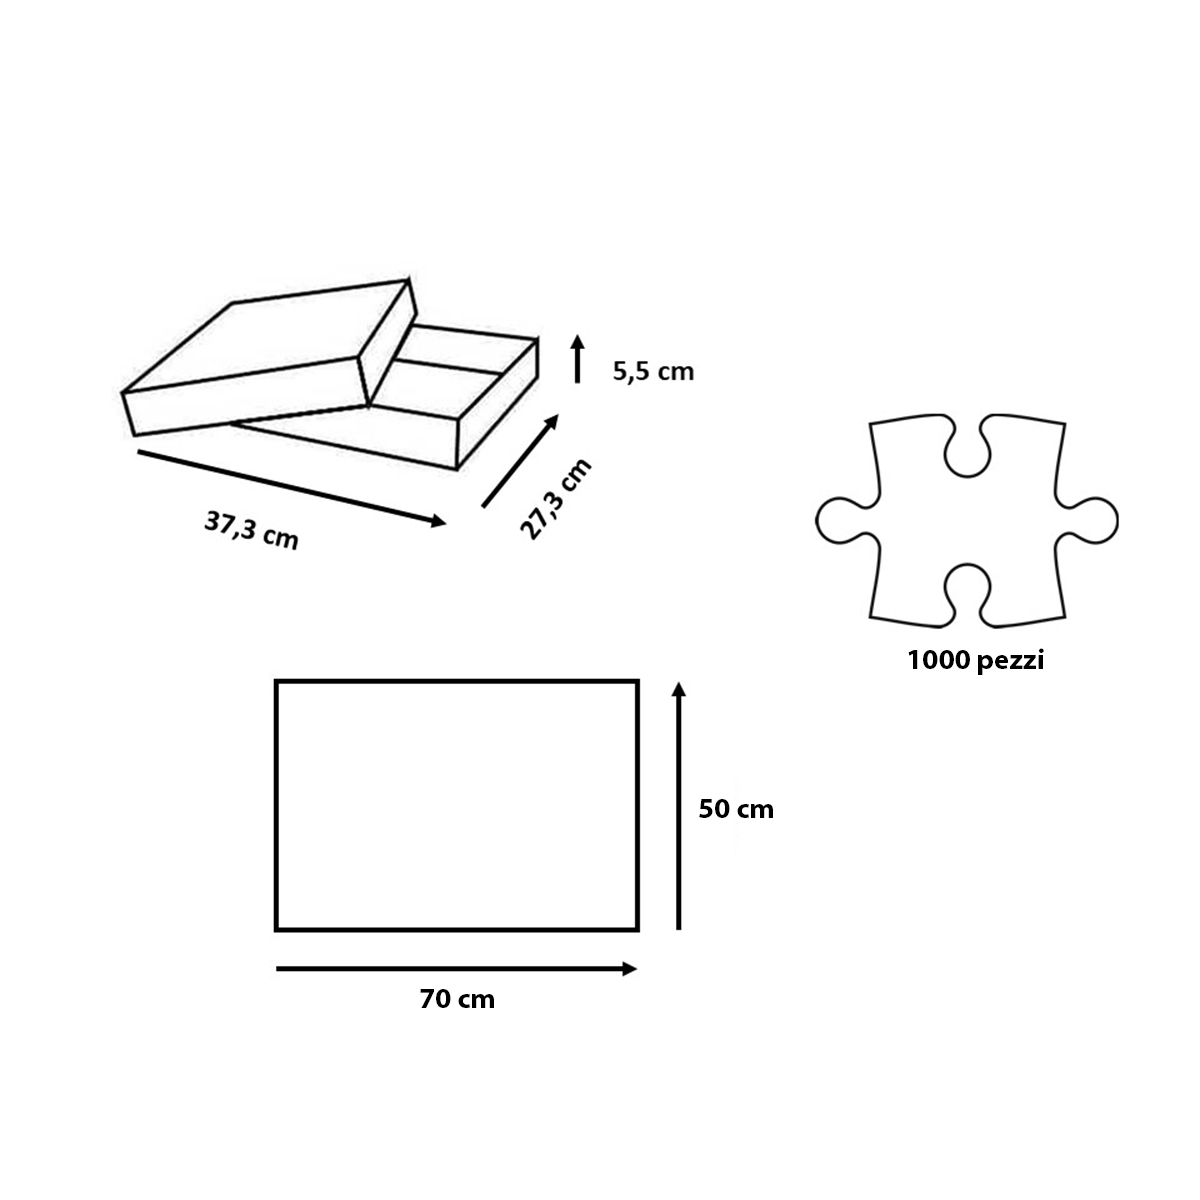 Ravensburger puzzle per adulti - 1000 pezzi - algarve- mare scogliera - paesaggio - dimensione puzzle: 70x50 cm - RAVENSBURGER